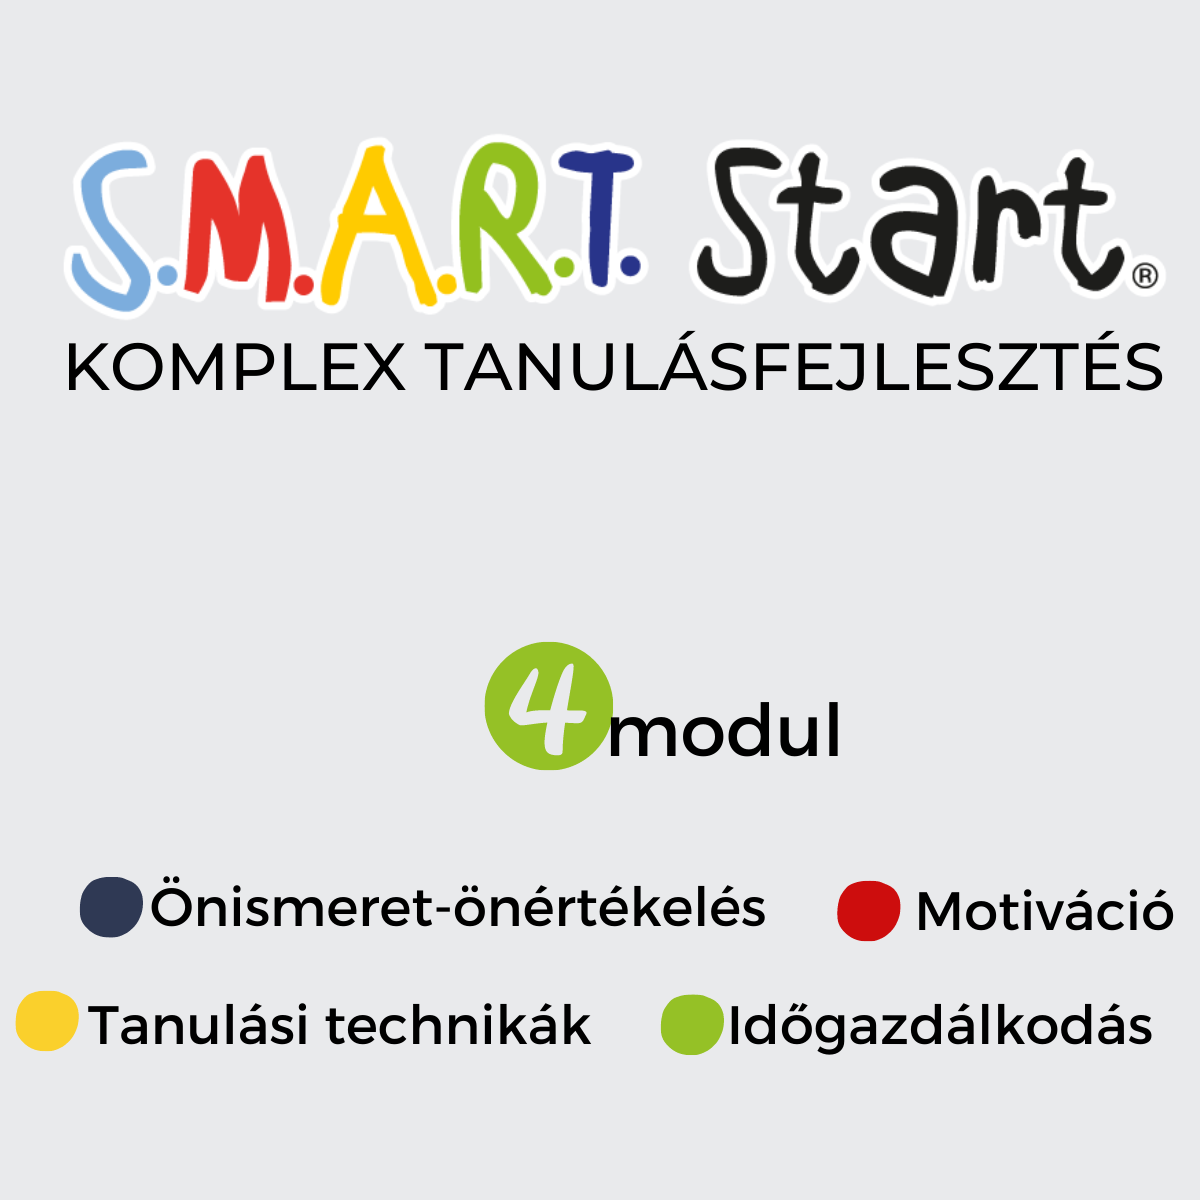 SMART Start komplex tanulásfejlesztés